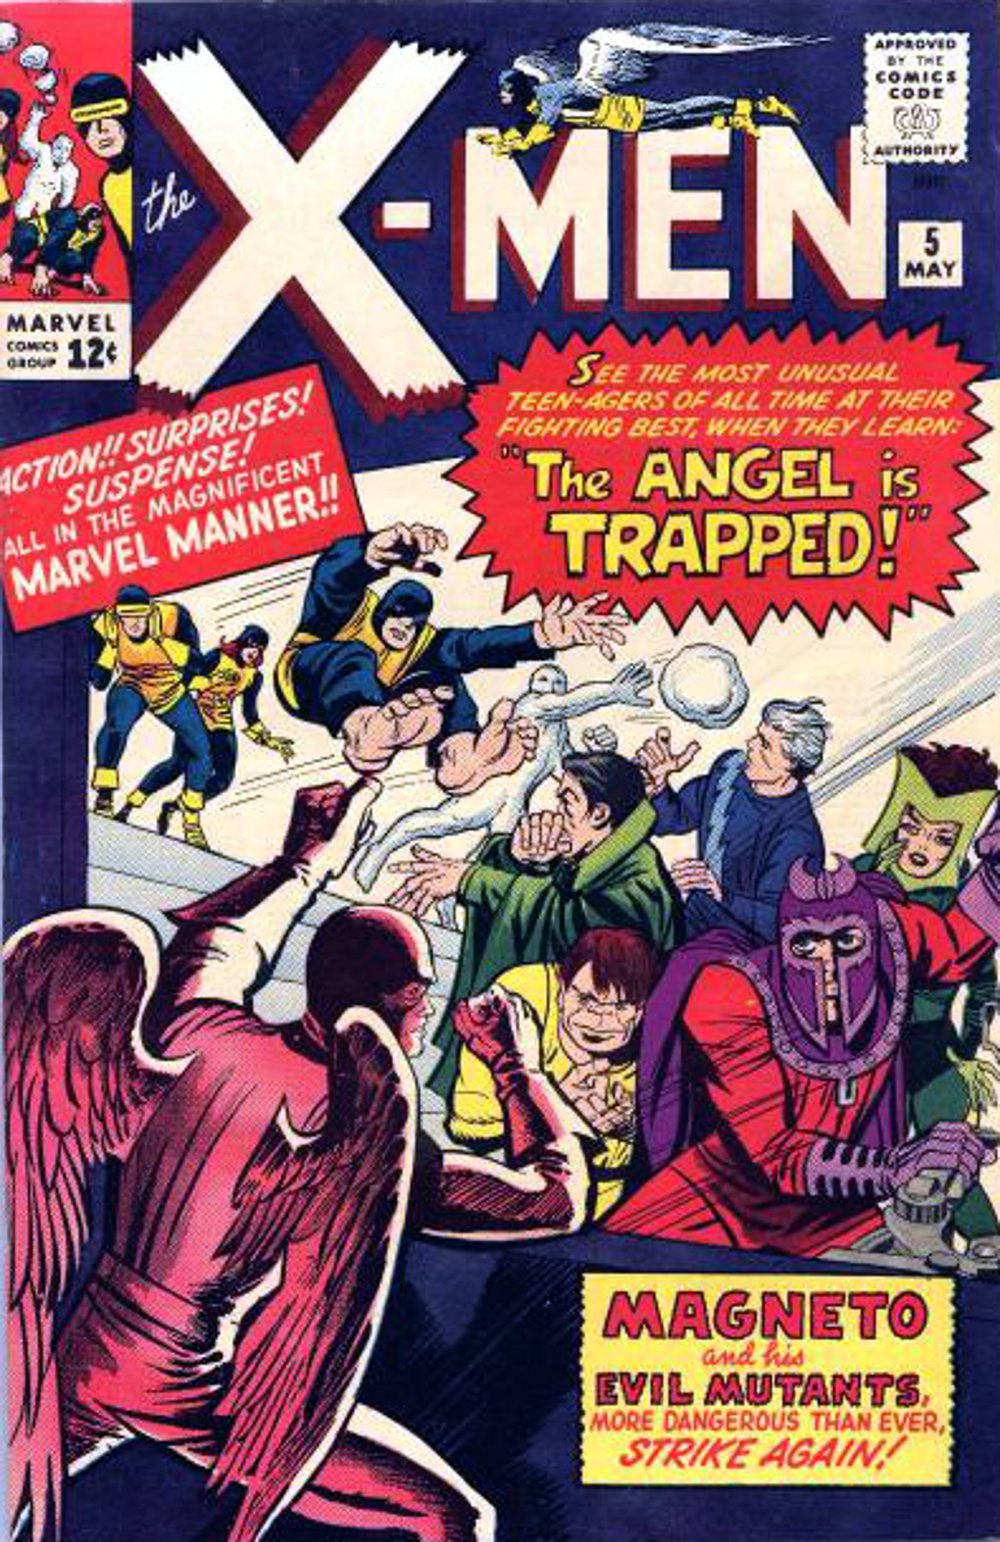 X-Men Vol. 1 #5